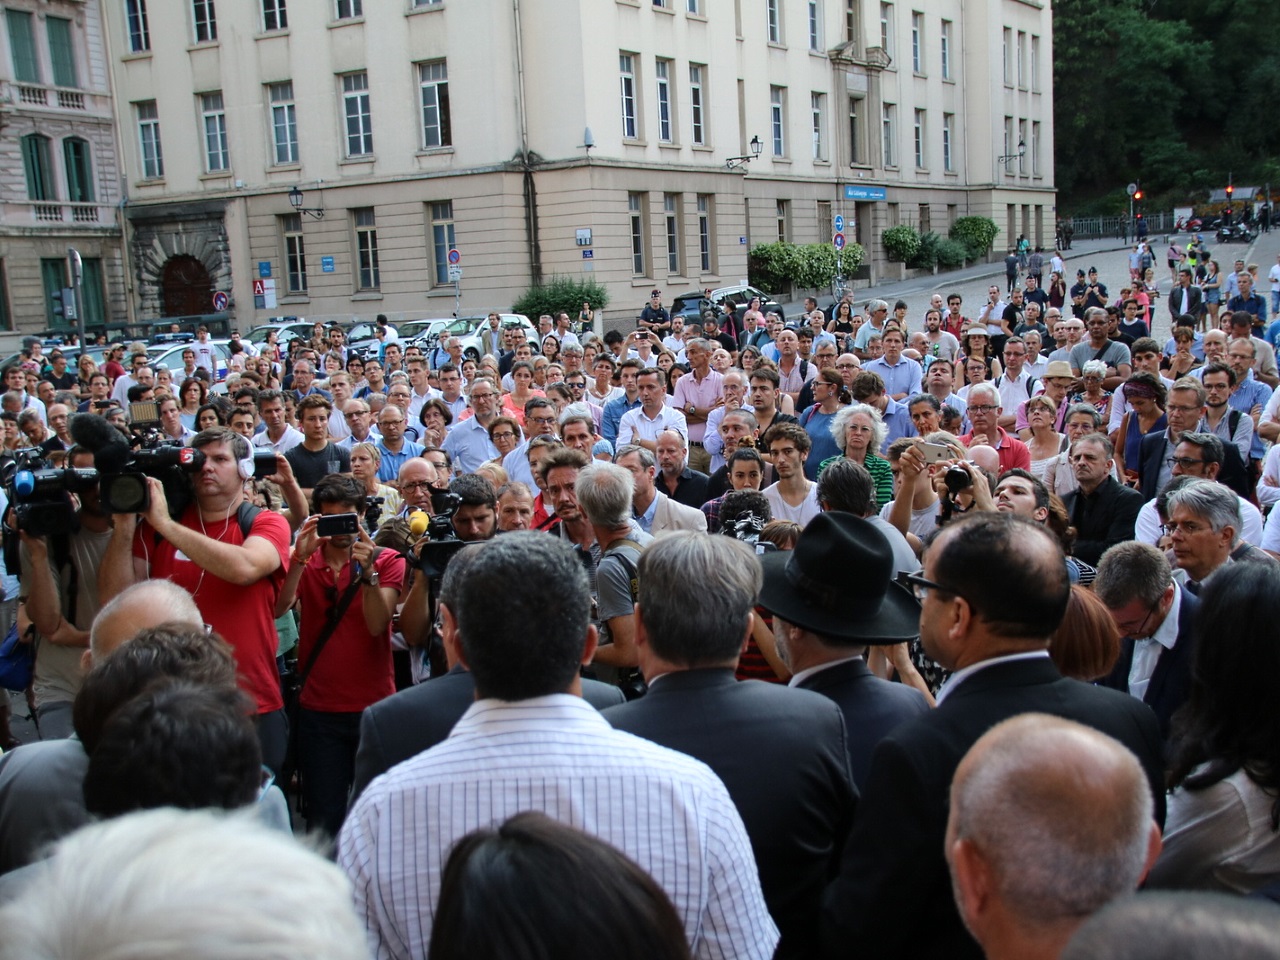 Environ 300 personnes sur la place devant la cathédrale Saint-Jean - LyonMag